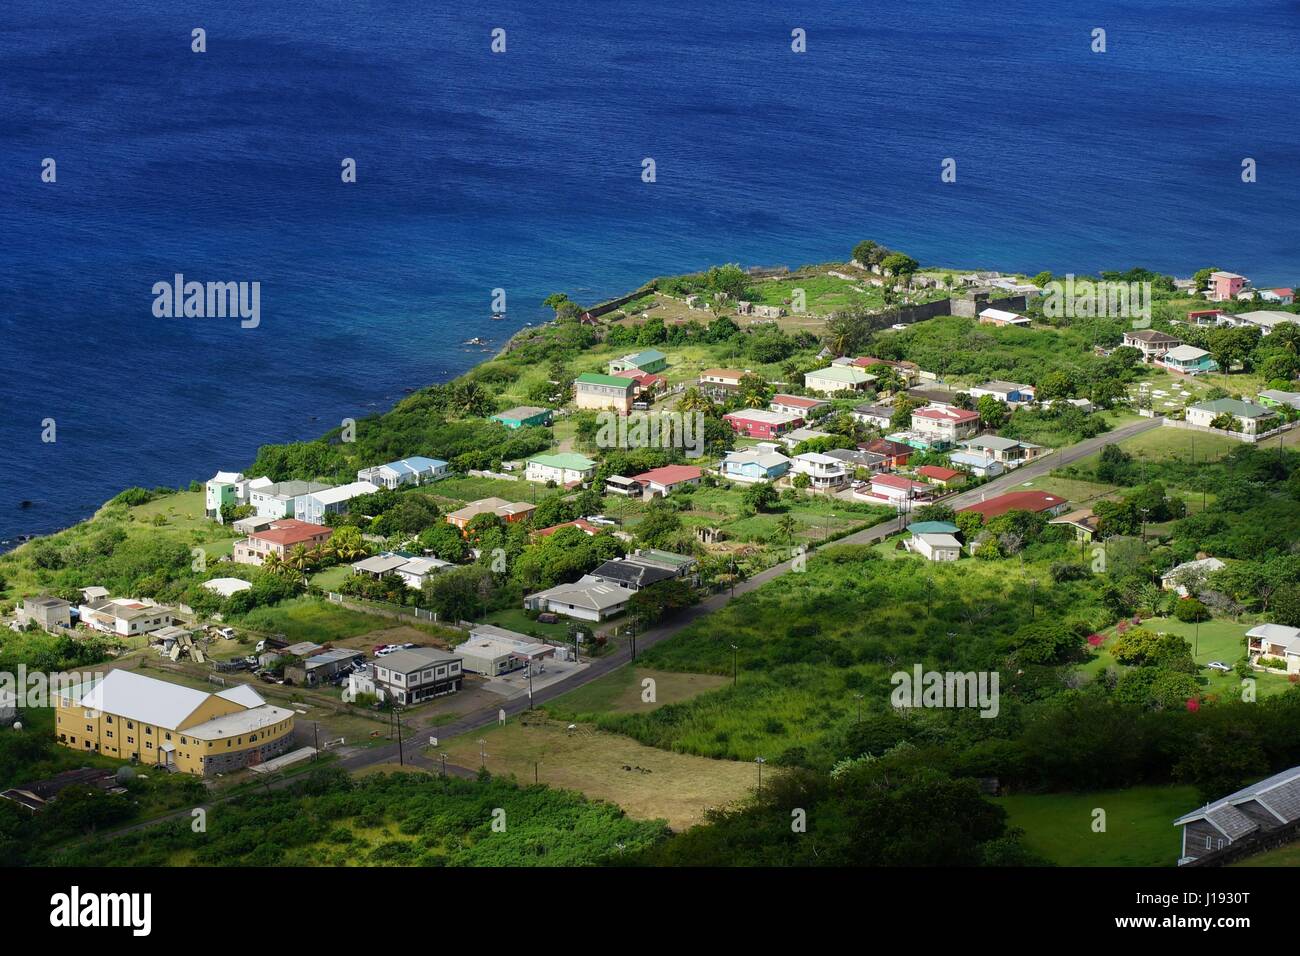 Una vista dall'alto sulla riva del mare di Saint Kitts Island, Saint Kitts e Nevis con edifici residenziali, strade e acqua di mare in una luminosa giornata di sole. Foto Stock